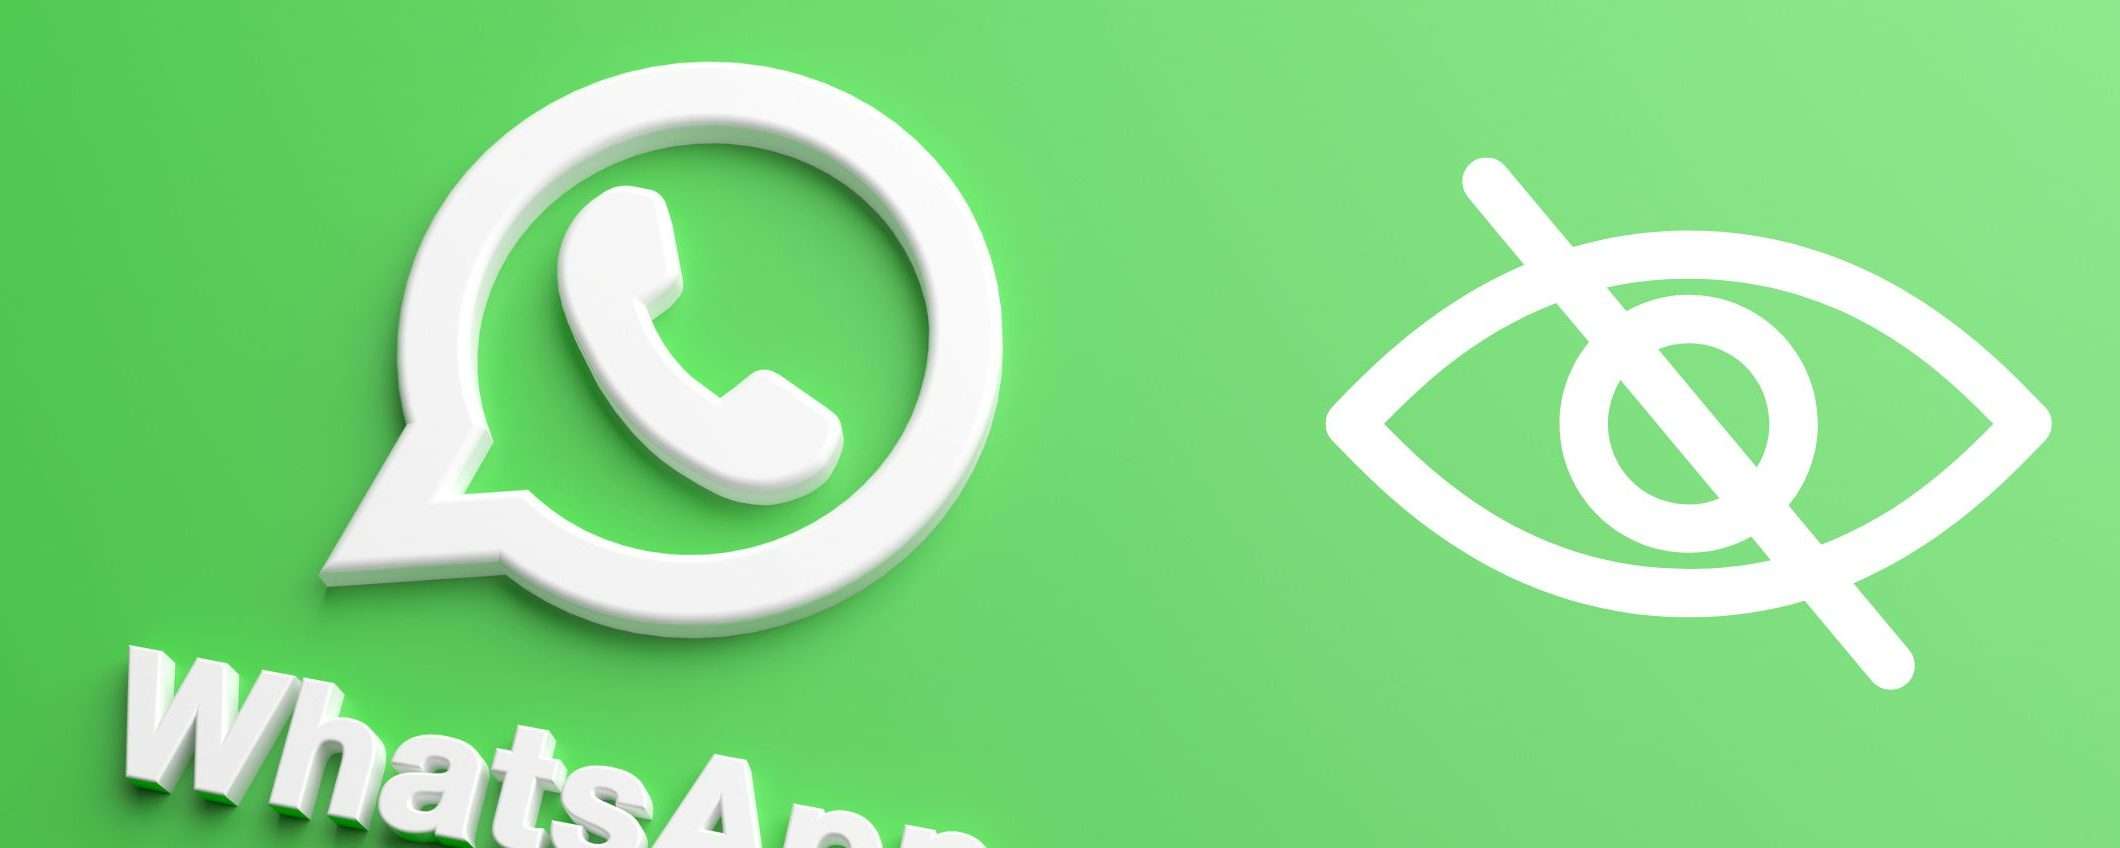 WhatsApp ci permetterà di nascondere il nostro stato online